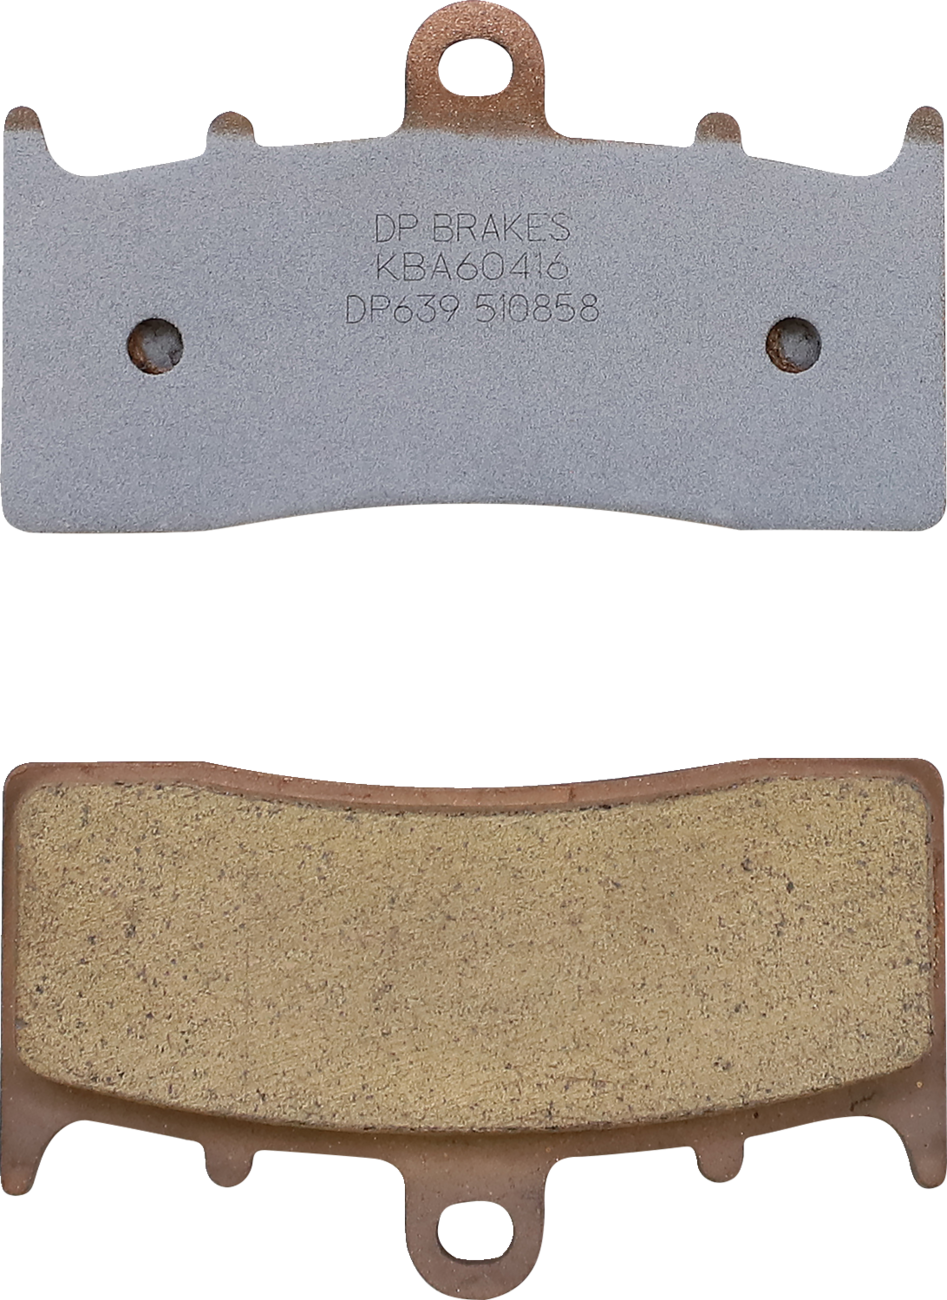 DP BRAKES Standard Brake Pads - BMW DP639